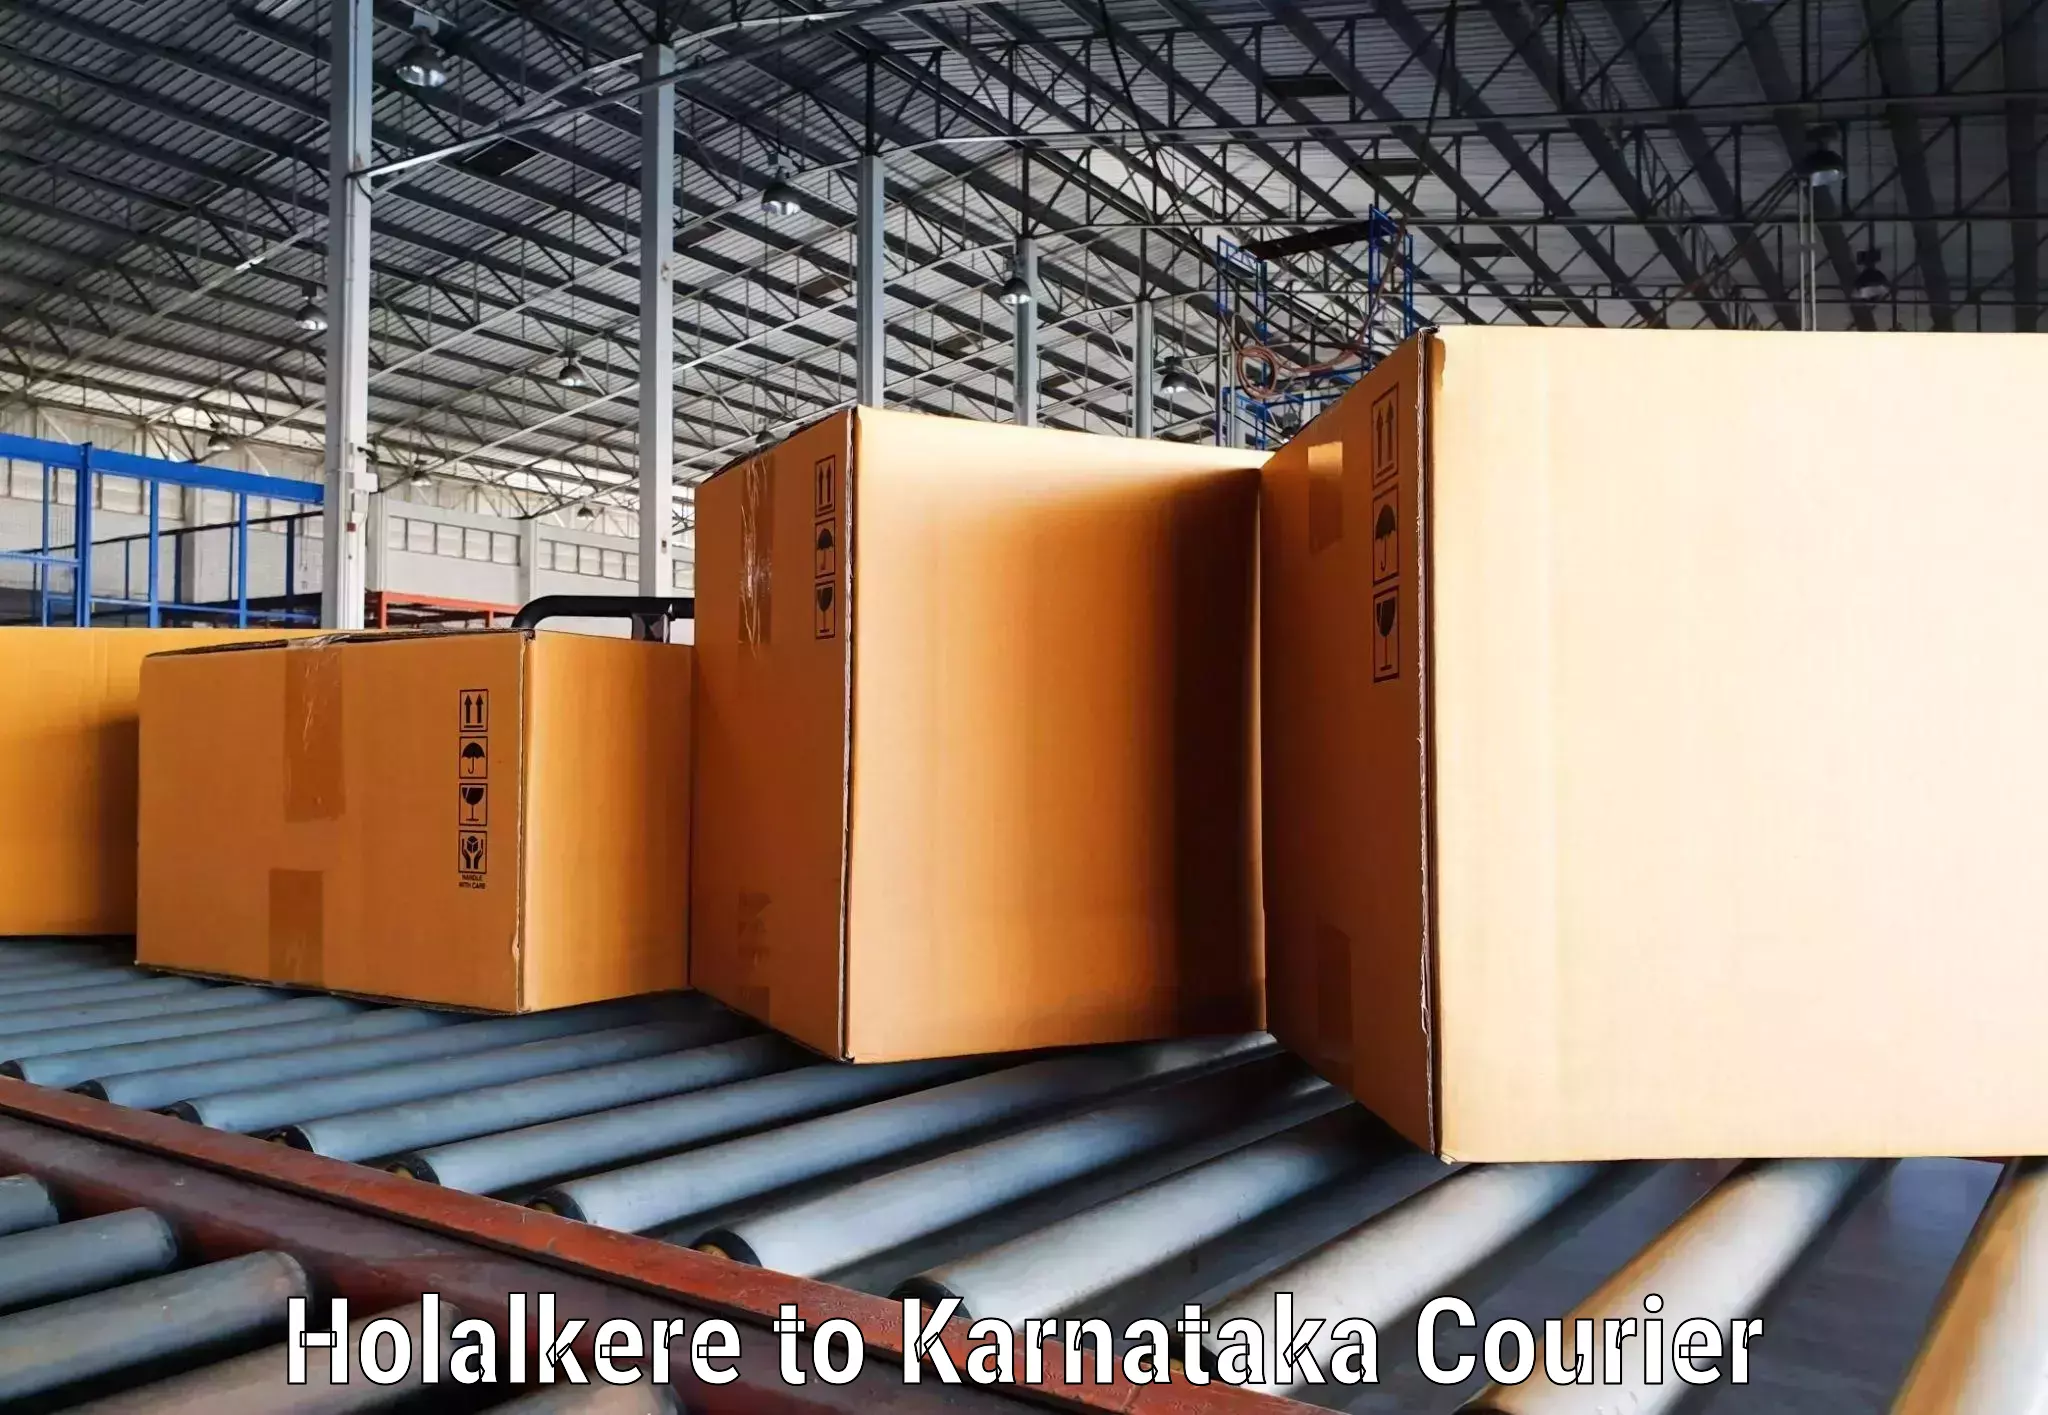 Efficient parcel tracking Holalkere to Kanjarakatte